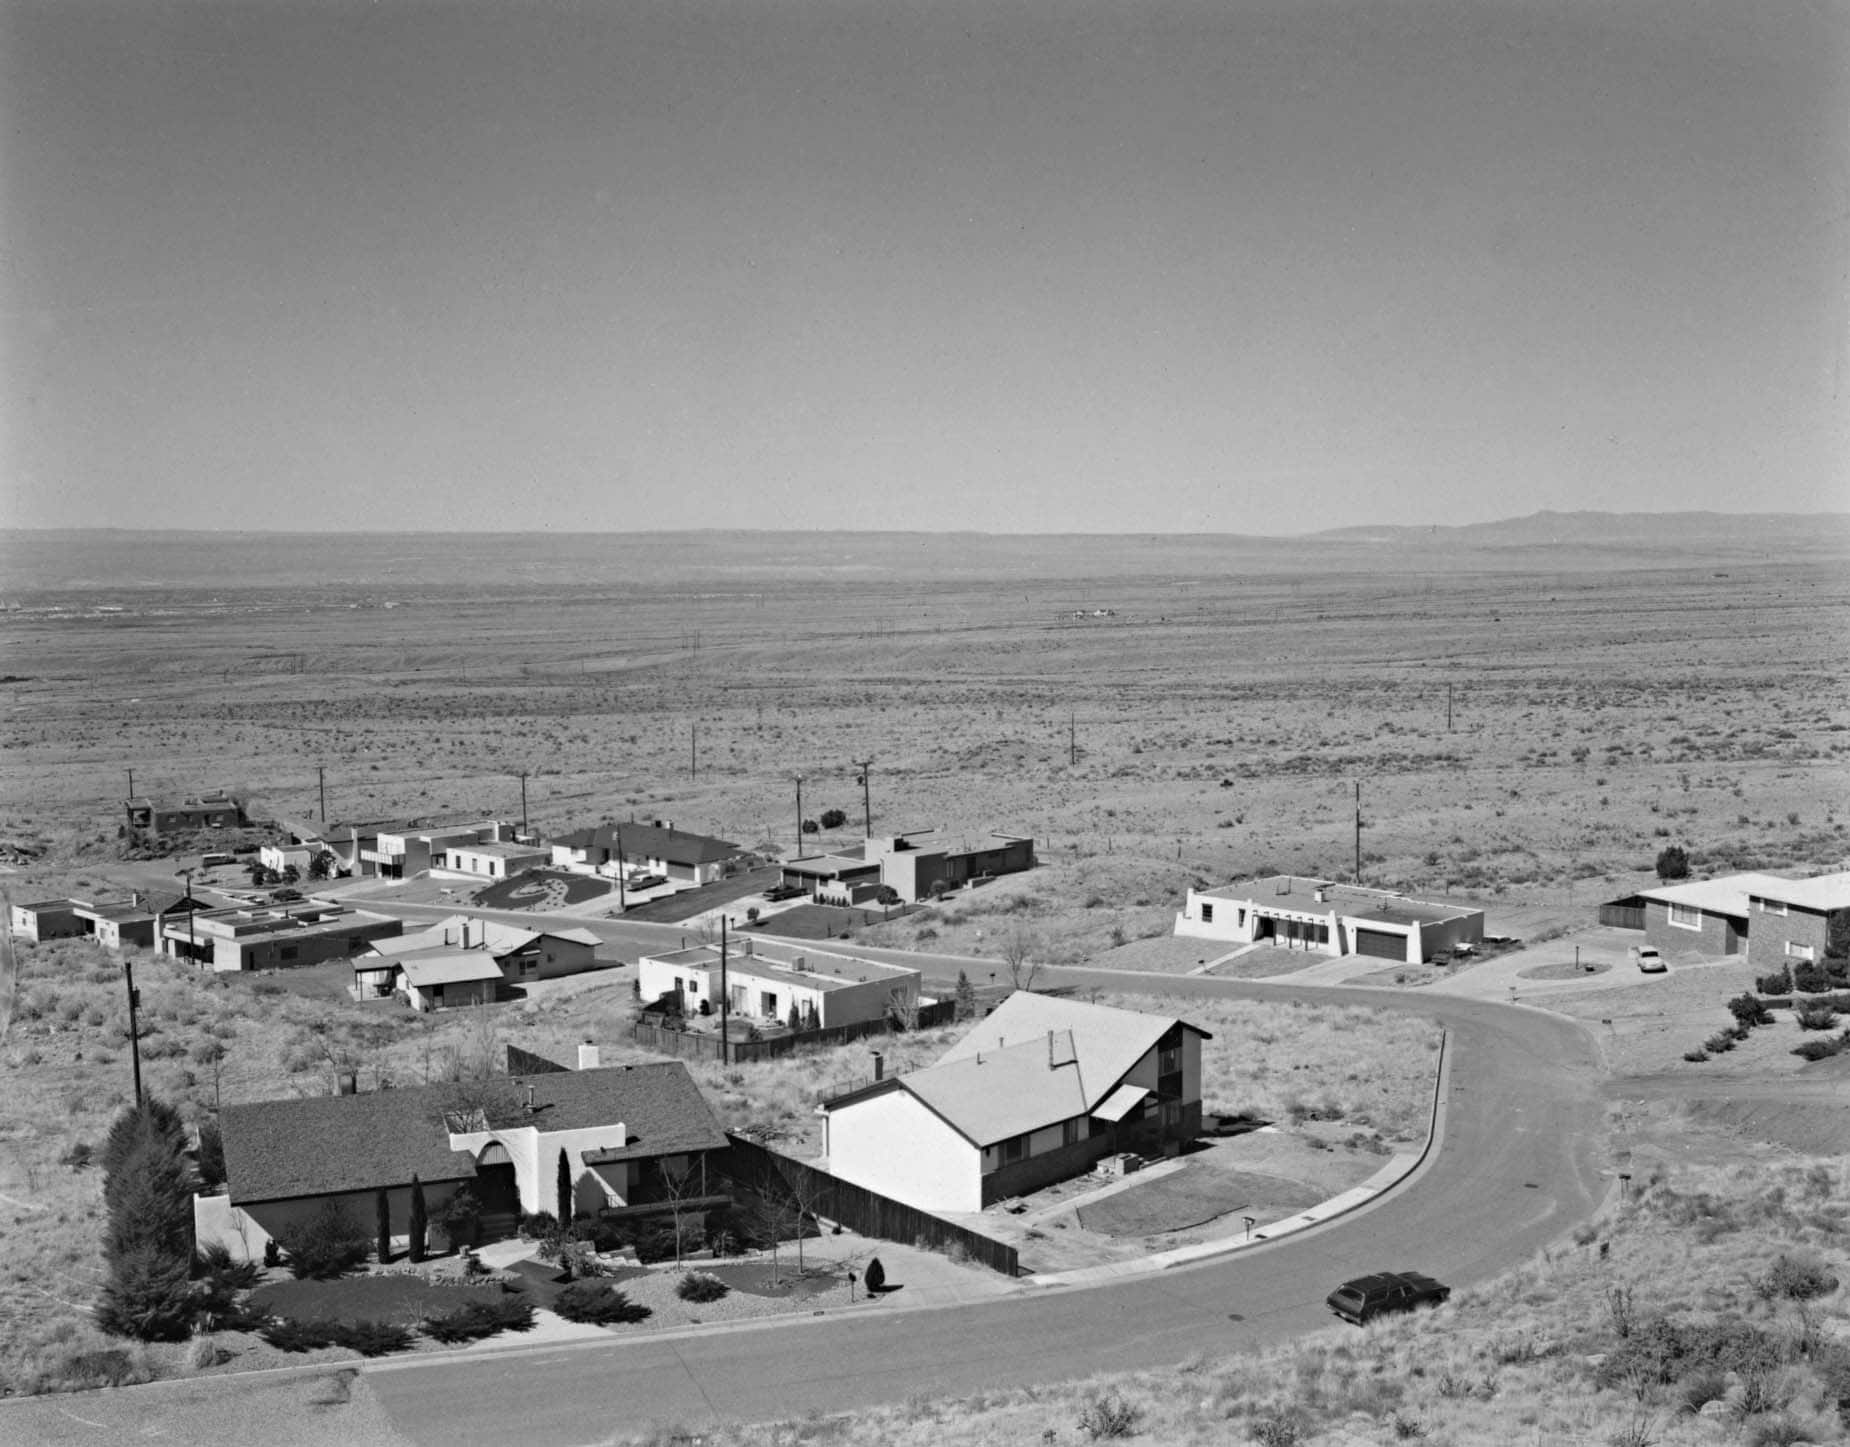 Northeast Corner of Albuquerque © Nicholas Nixon, 2022